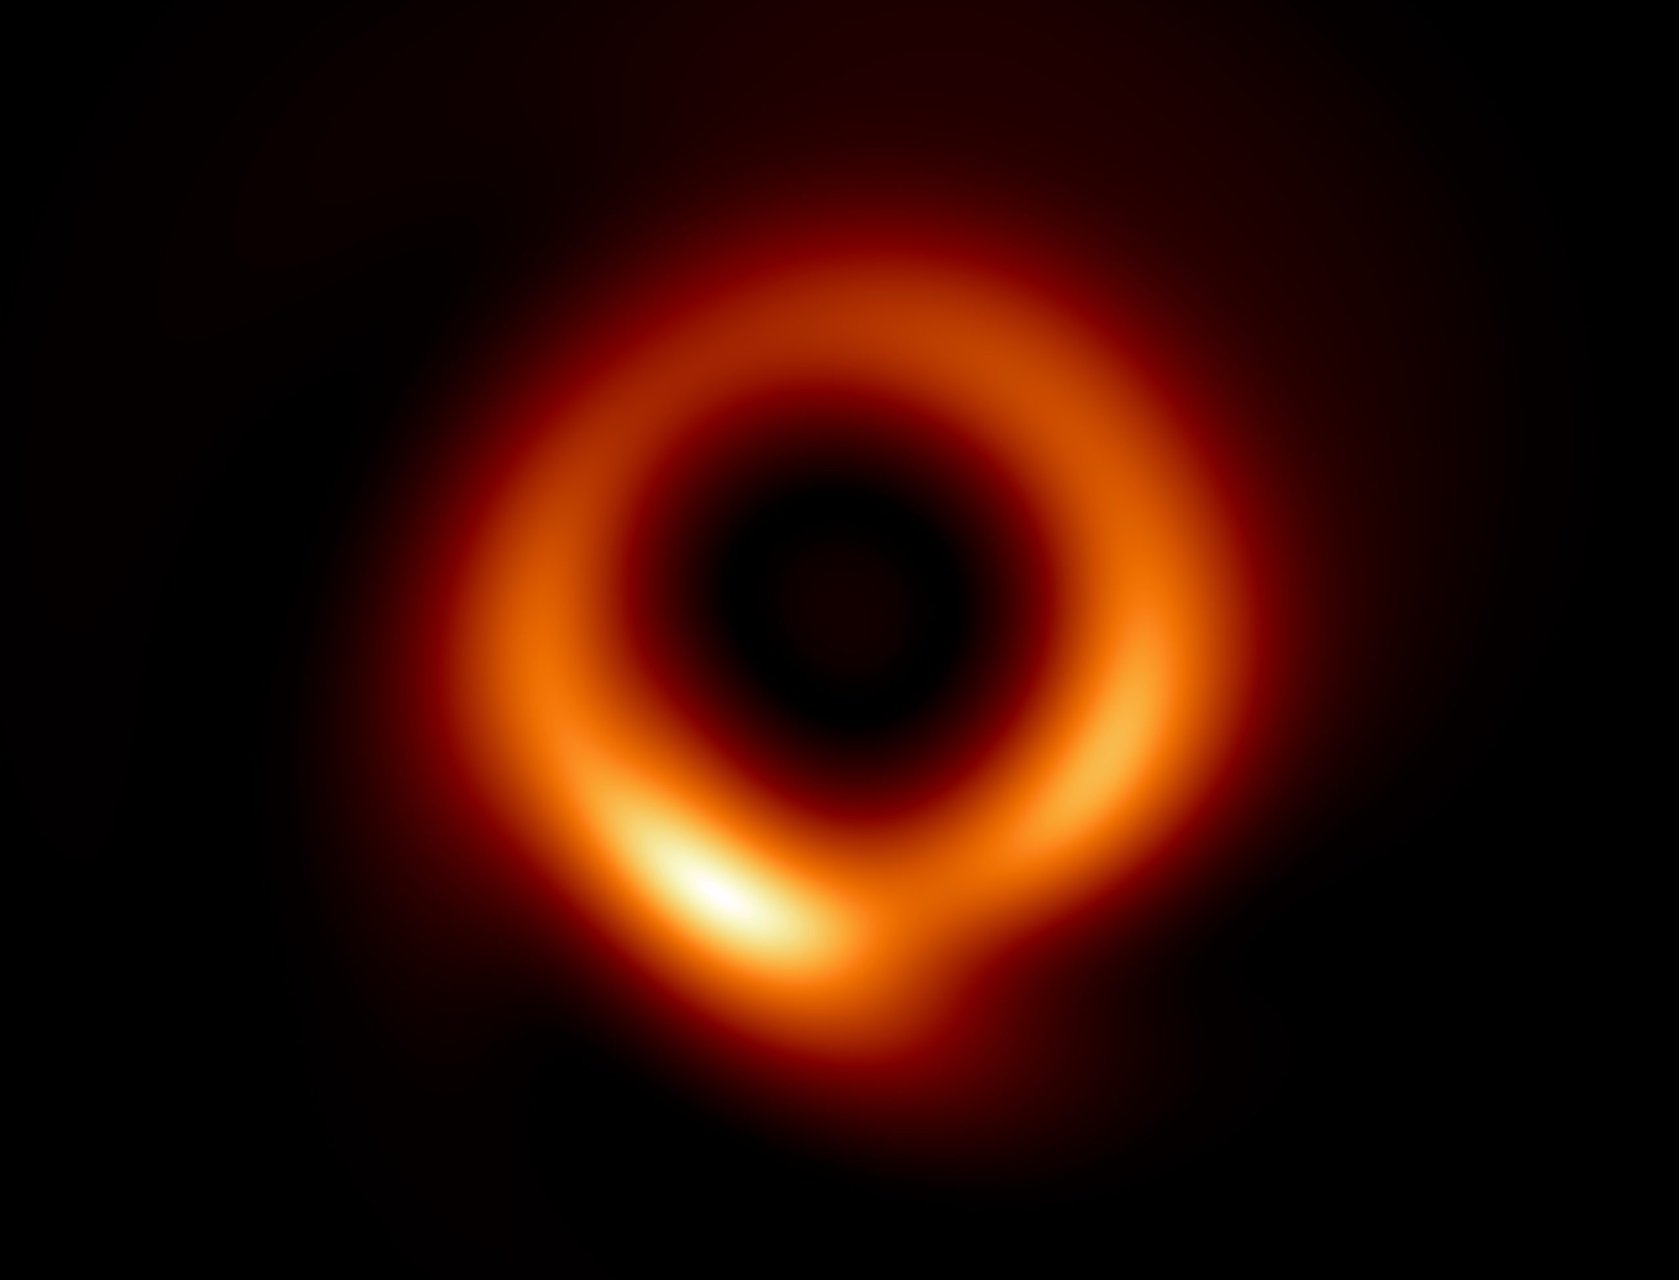 Una ciambella sfocata che rivela un anello infuocato in un’immagine più chiara del buco nero